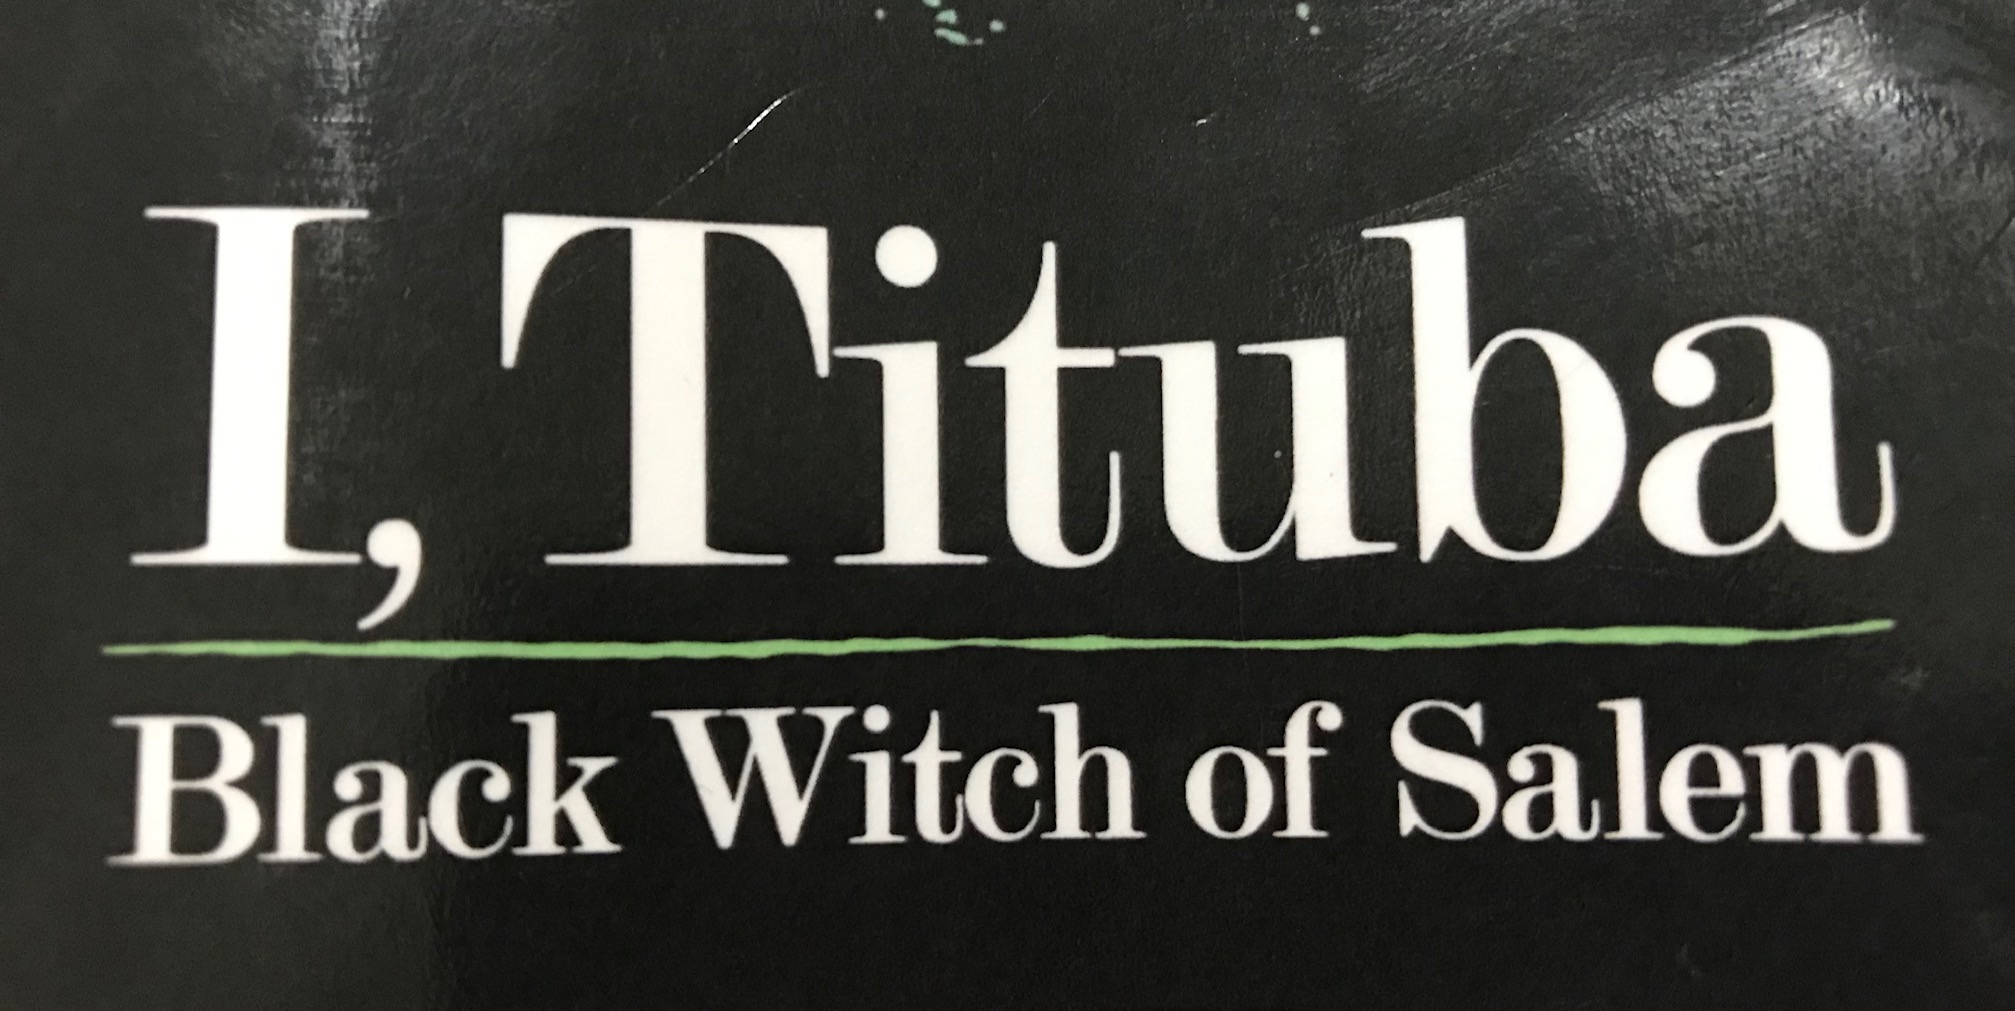 I, Tituba book cover detail